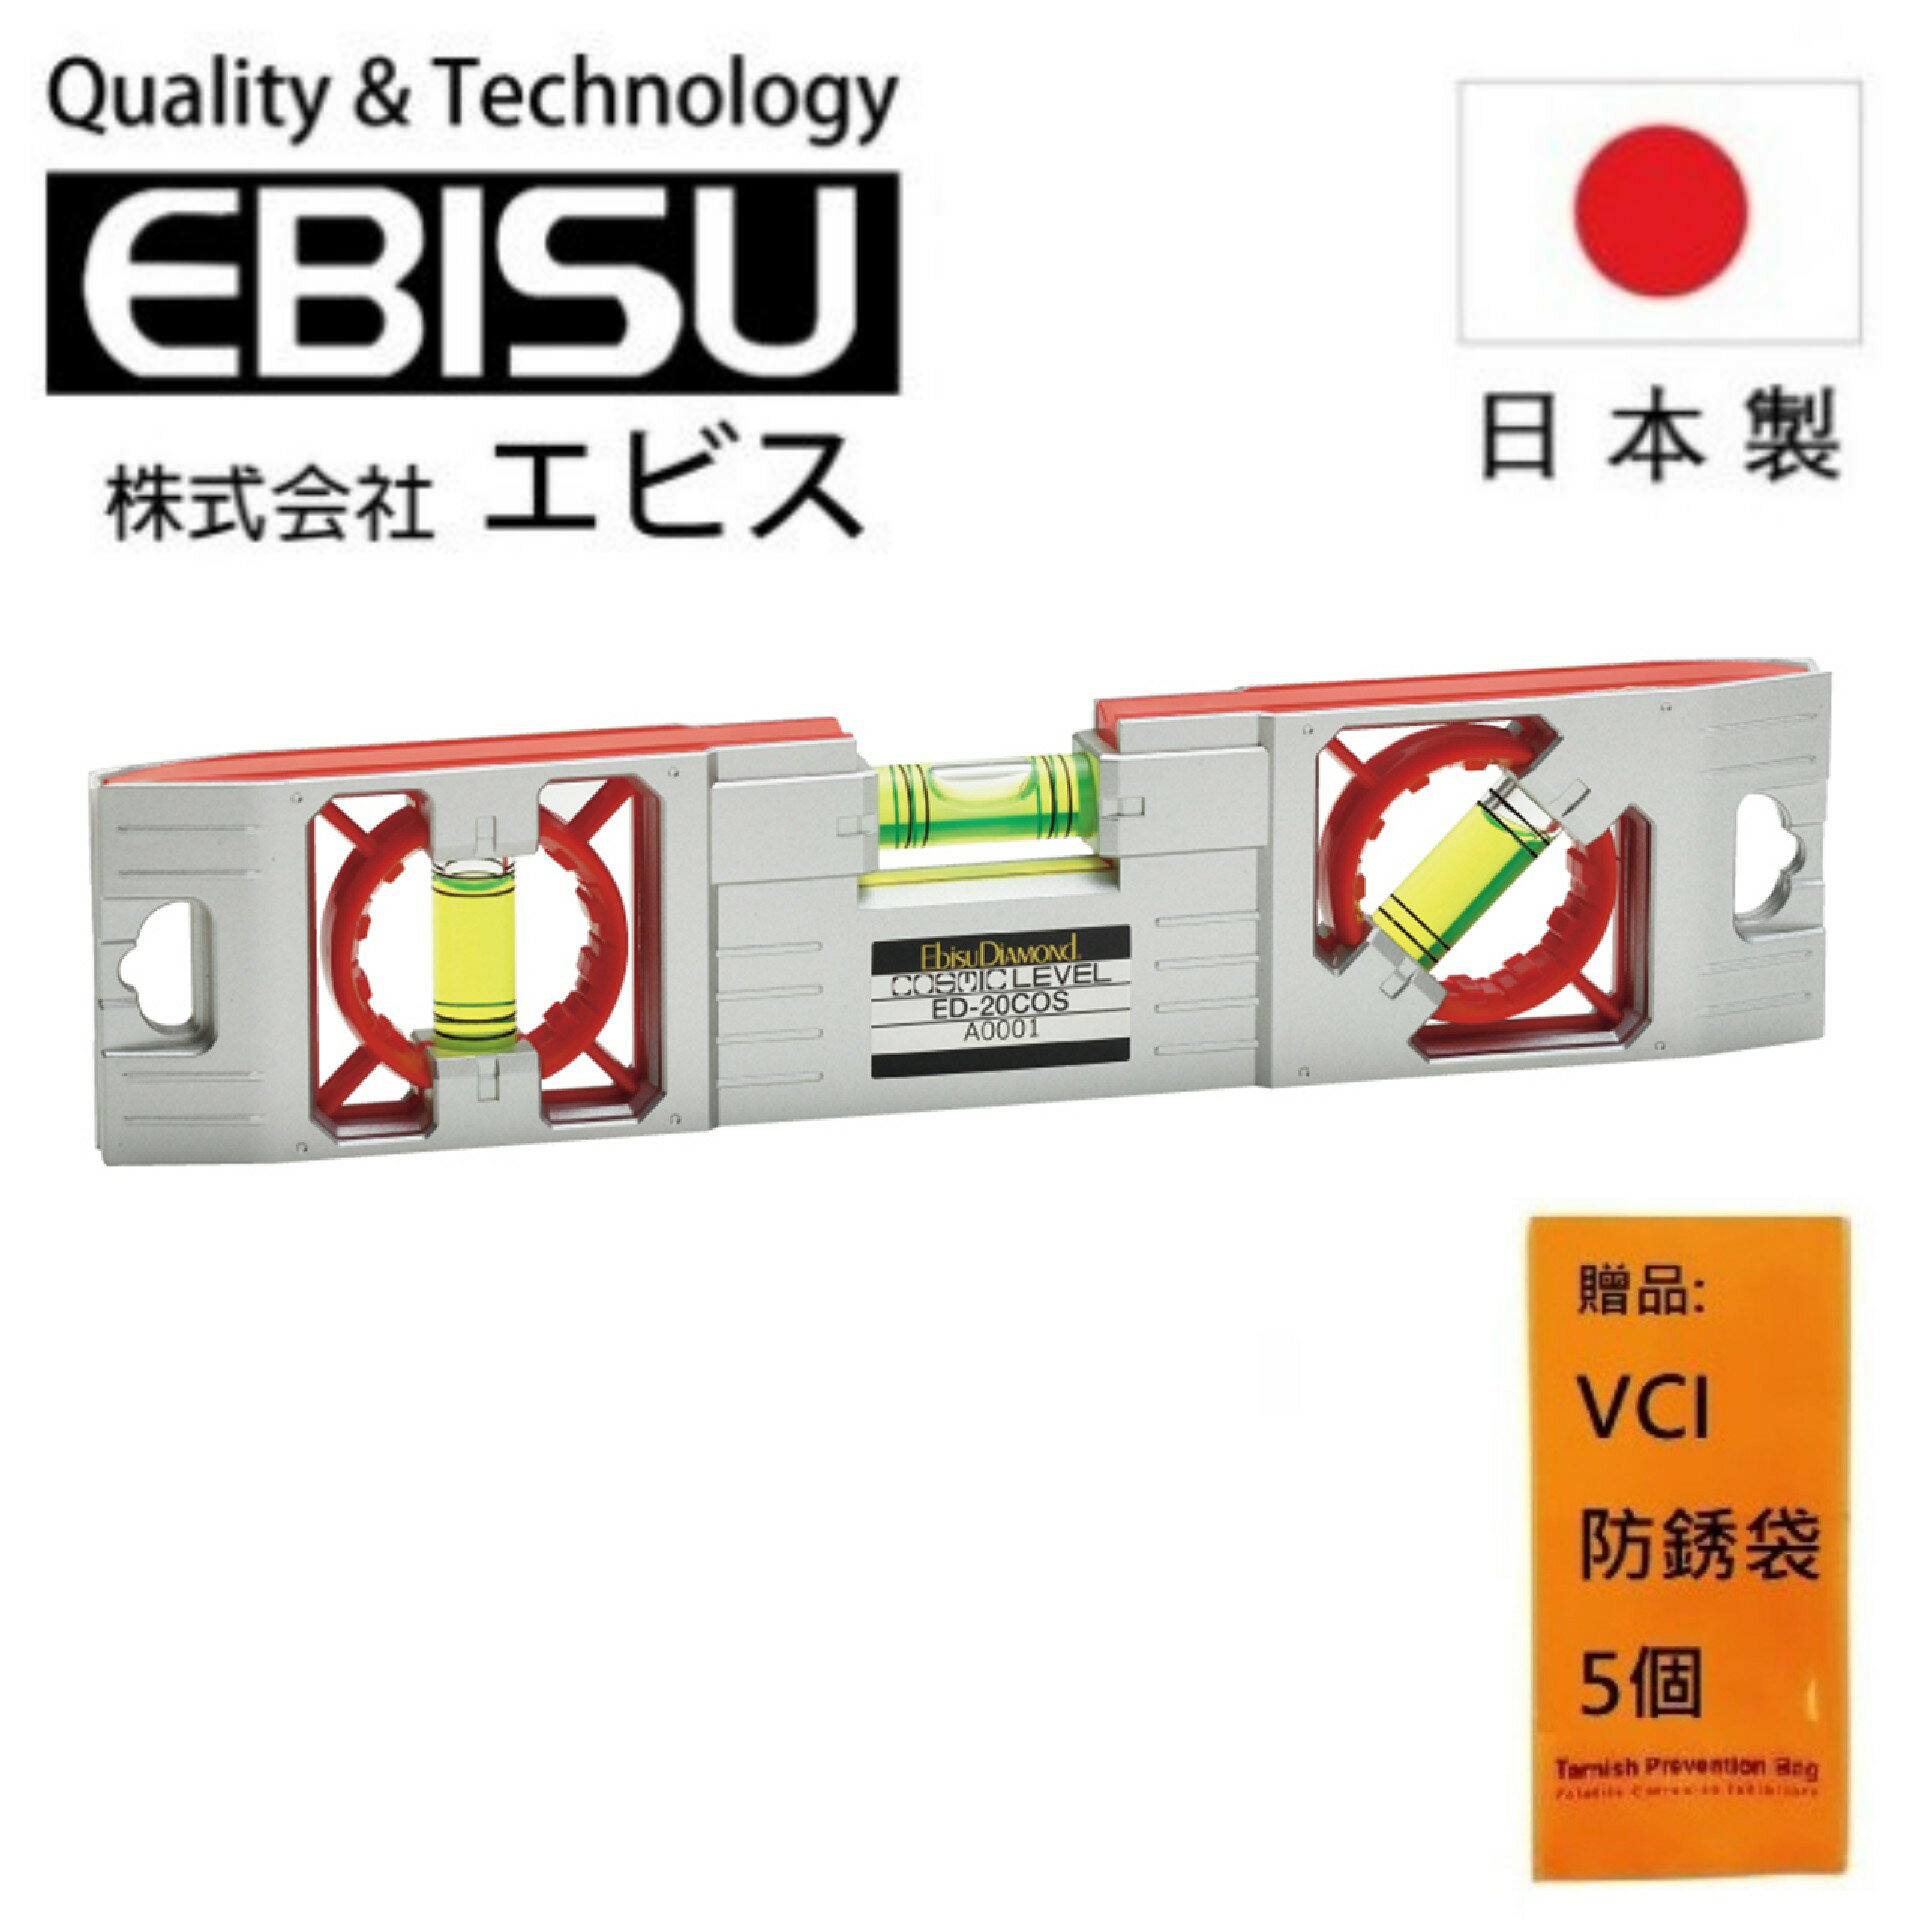 【日本EBISU】 多方向磁吸水平尺 200mm ED-20COS 側邊帶凹槽便於吸附金屬管作管道測量